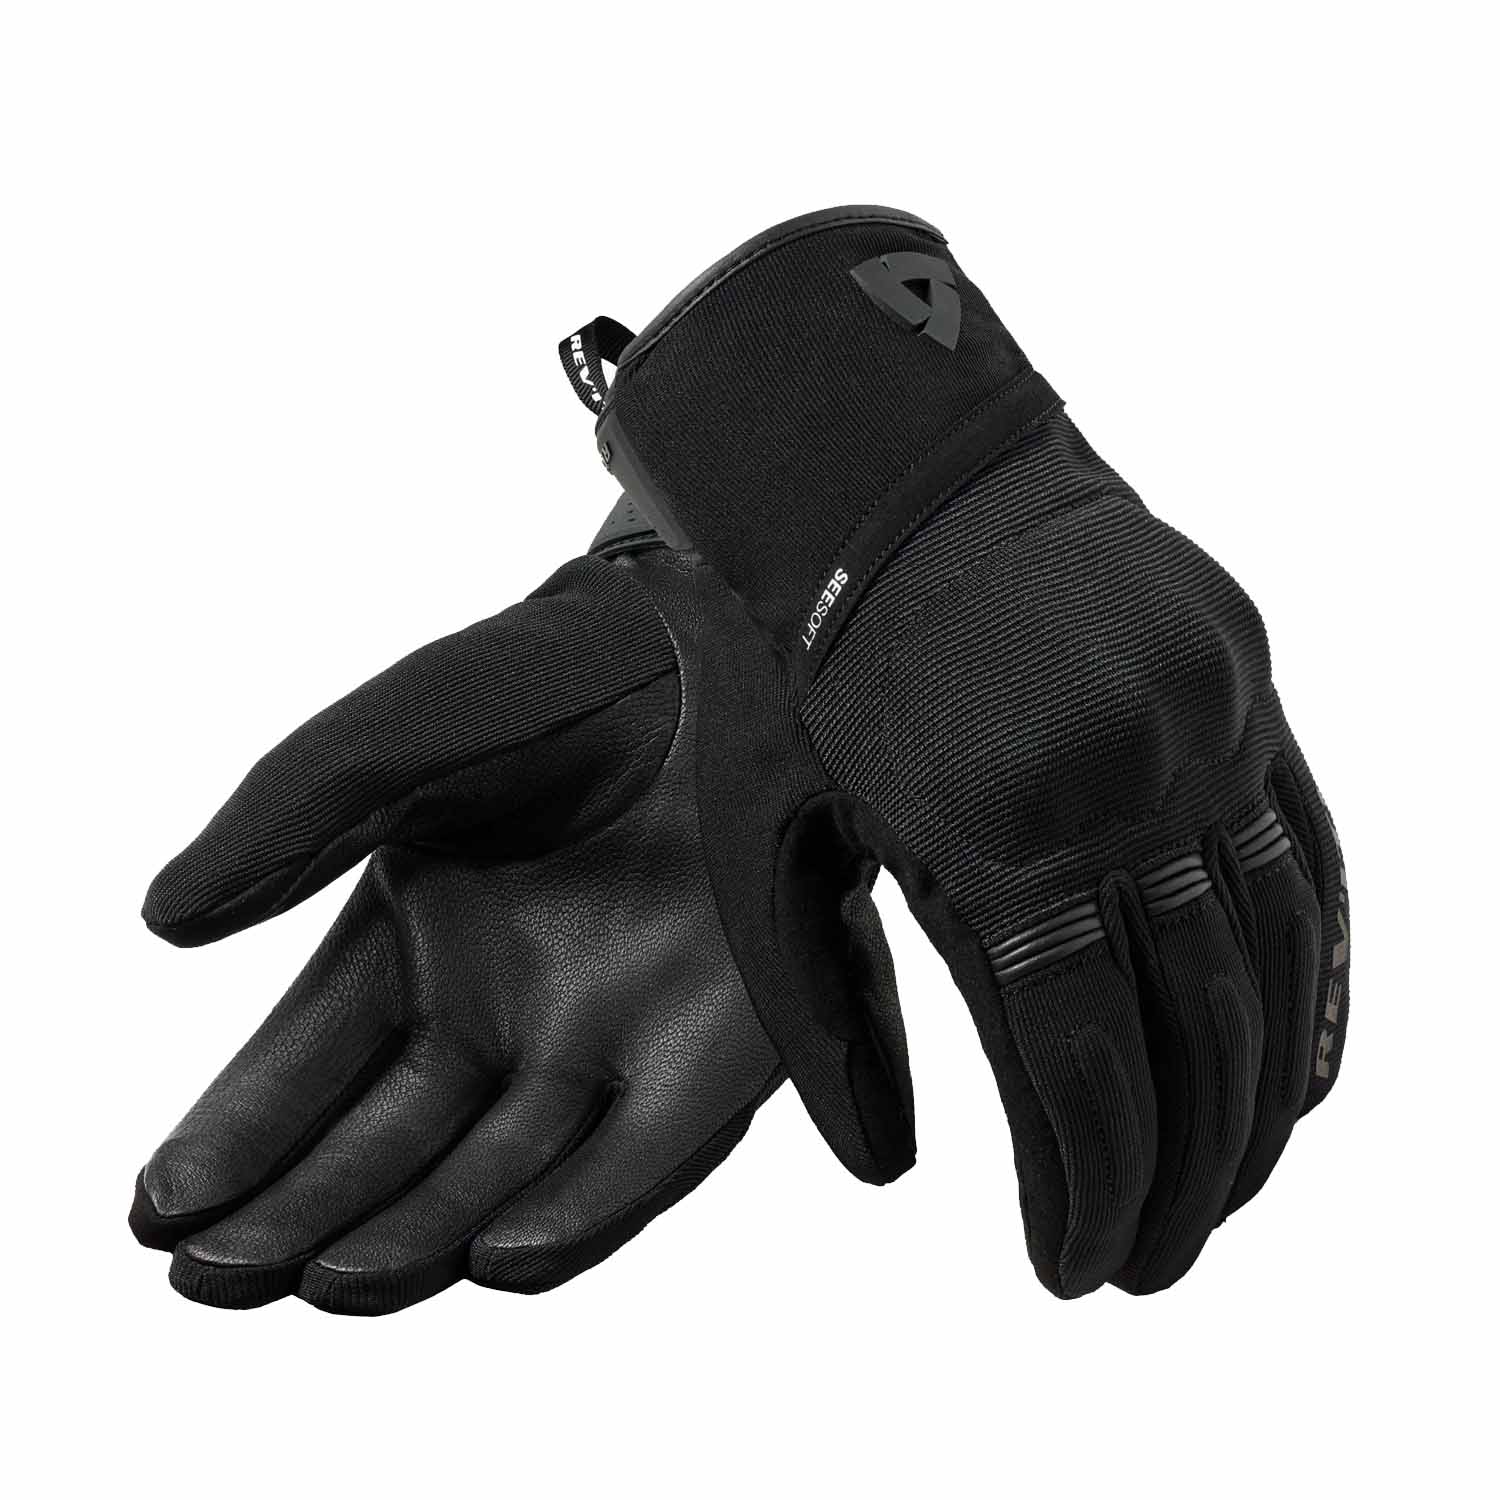 Image of REV'IT! Mosca 2 H2O Gloves Black Size S EN